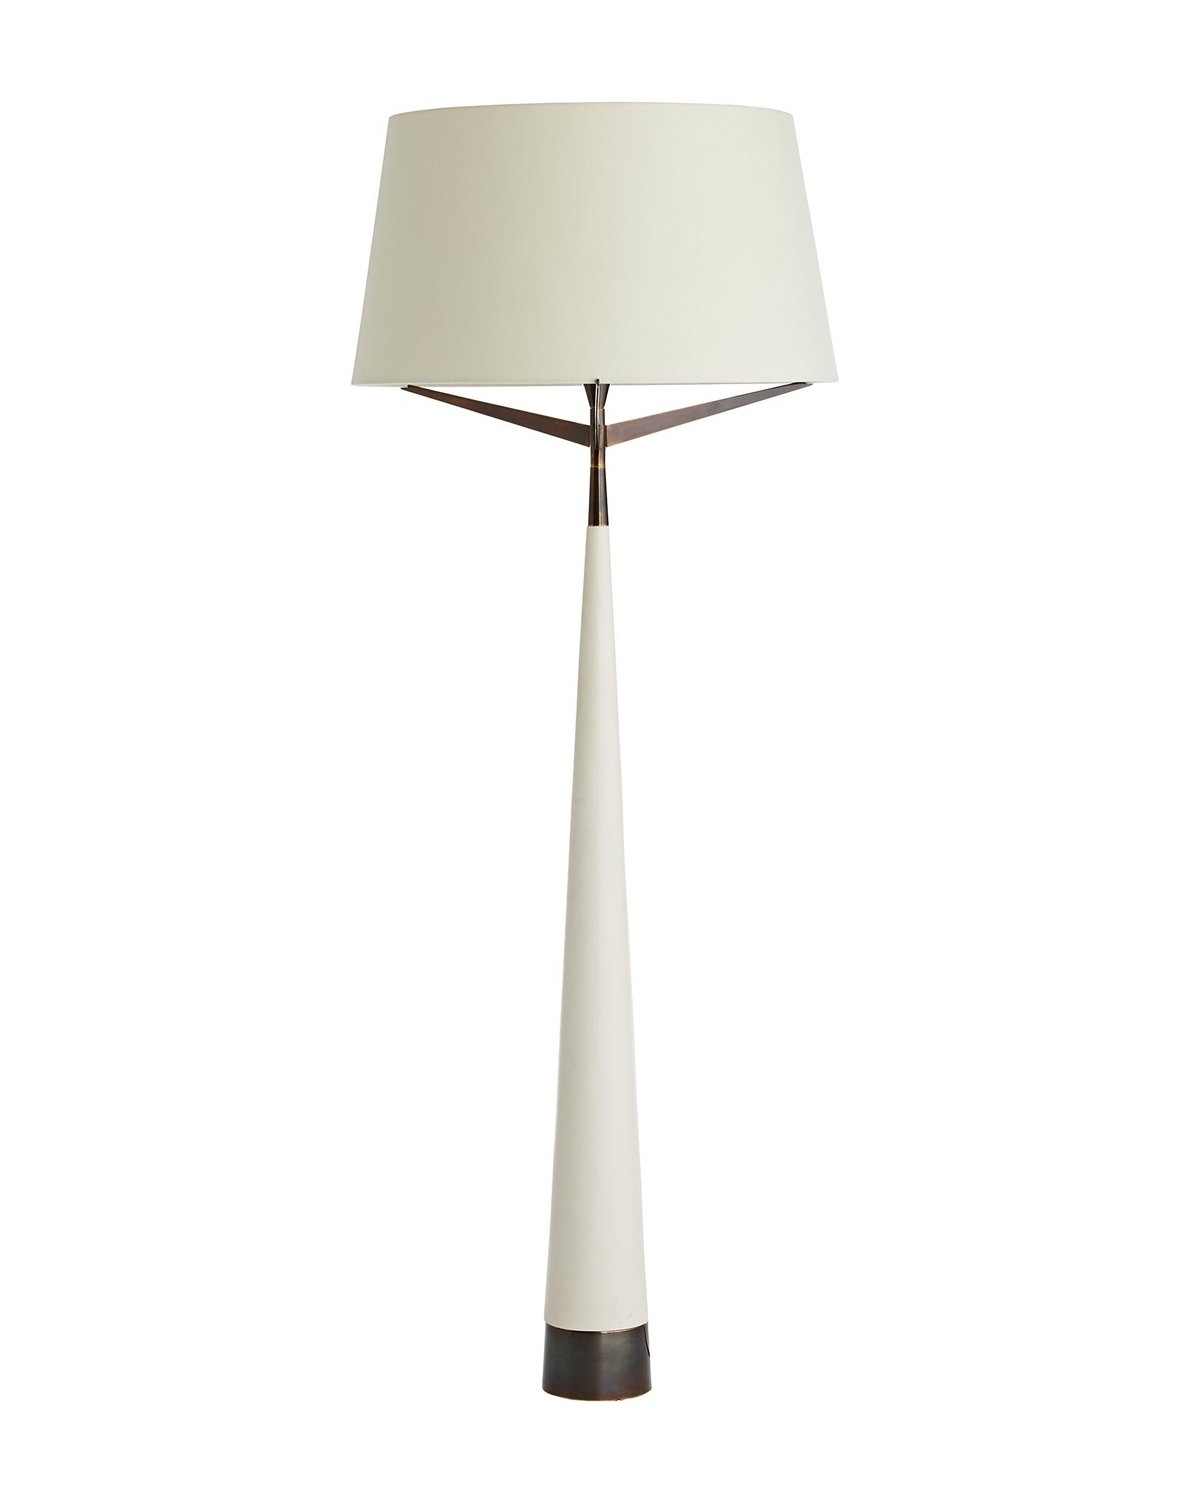 ELDEN FLOOR LAMP - Image 0